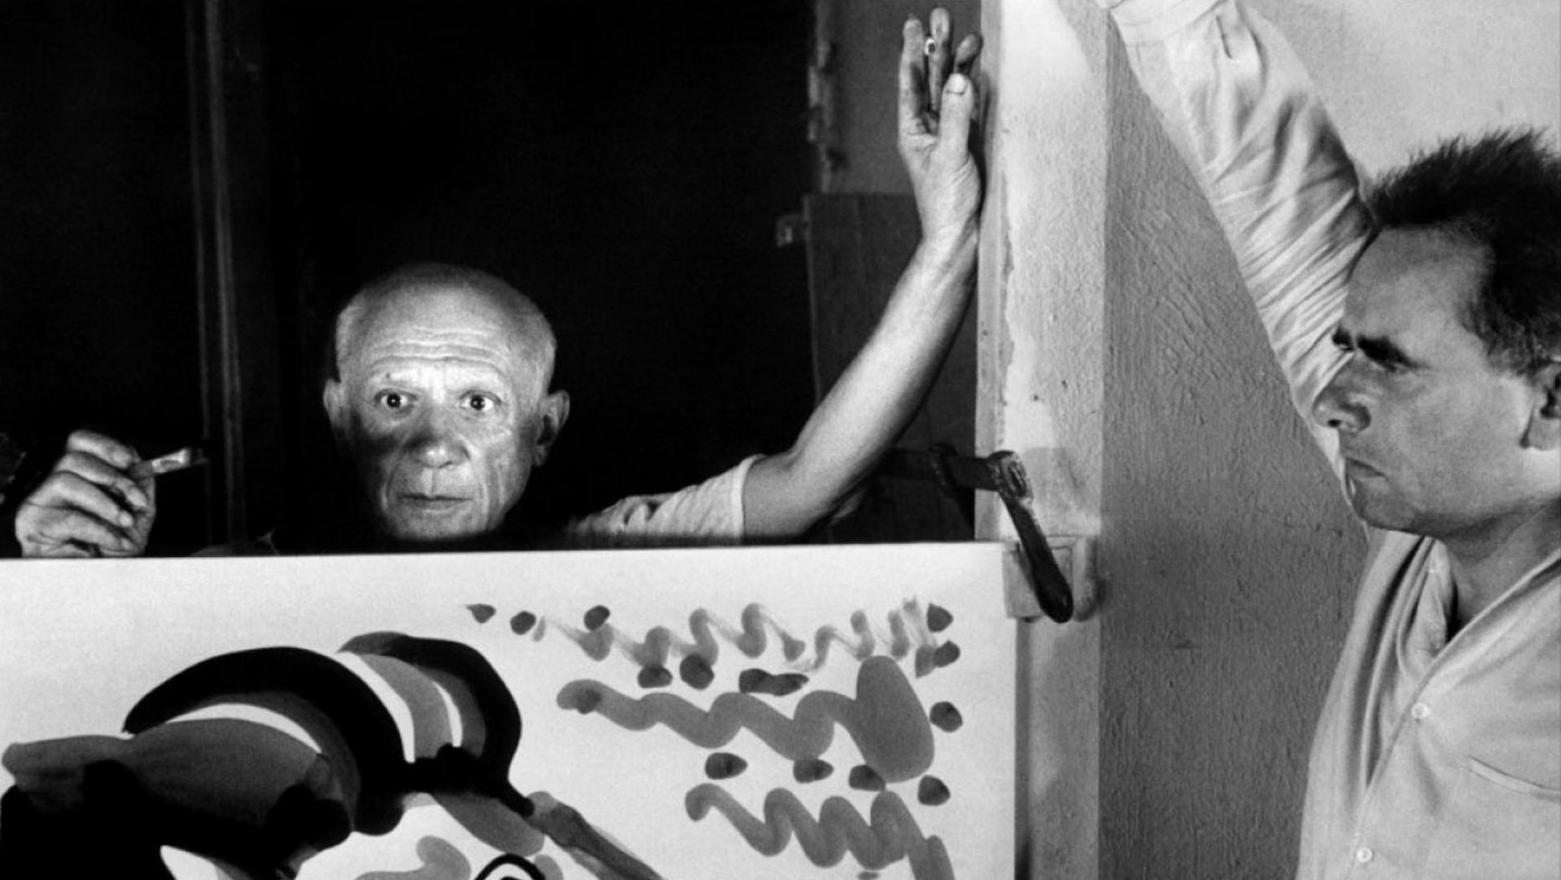 L’artiste et le cinéaste lors du tournage du Mystère Picasso (1955), d’Henri-Georges... Art et cinéma, un jeu d’influences